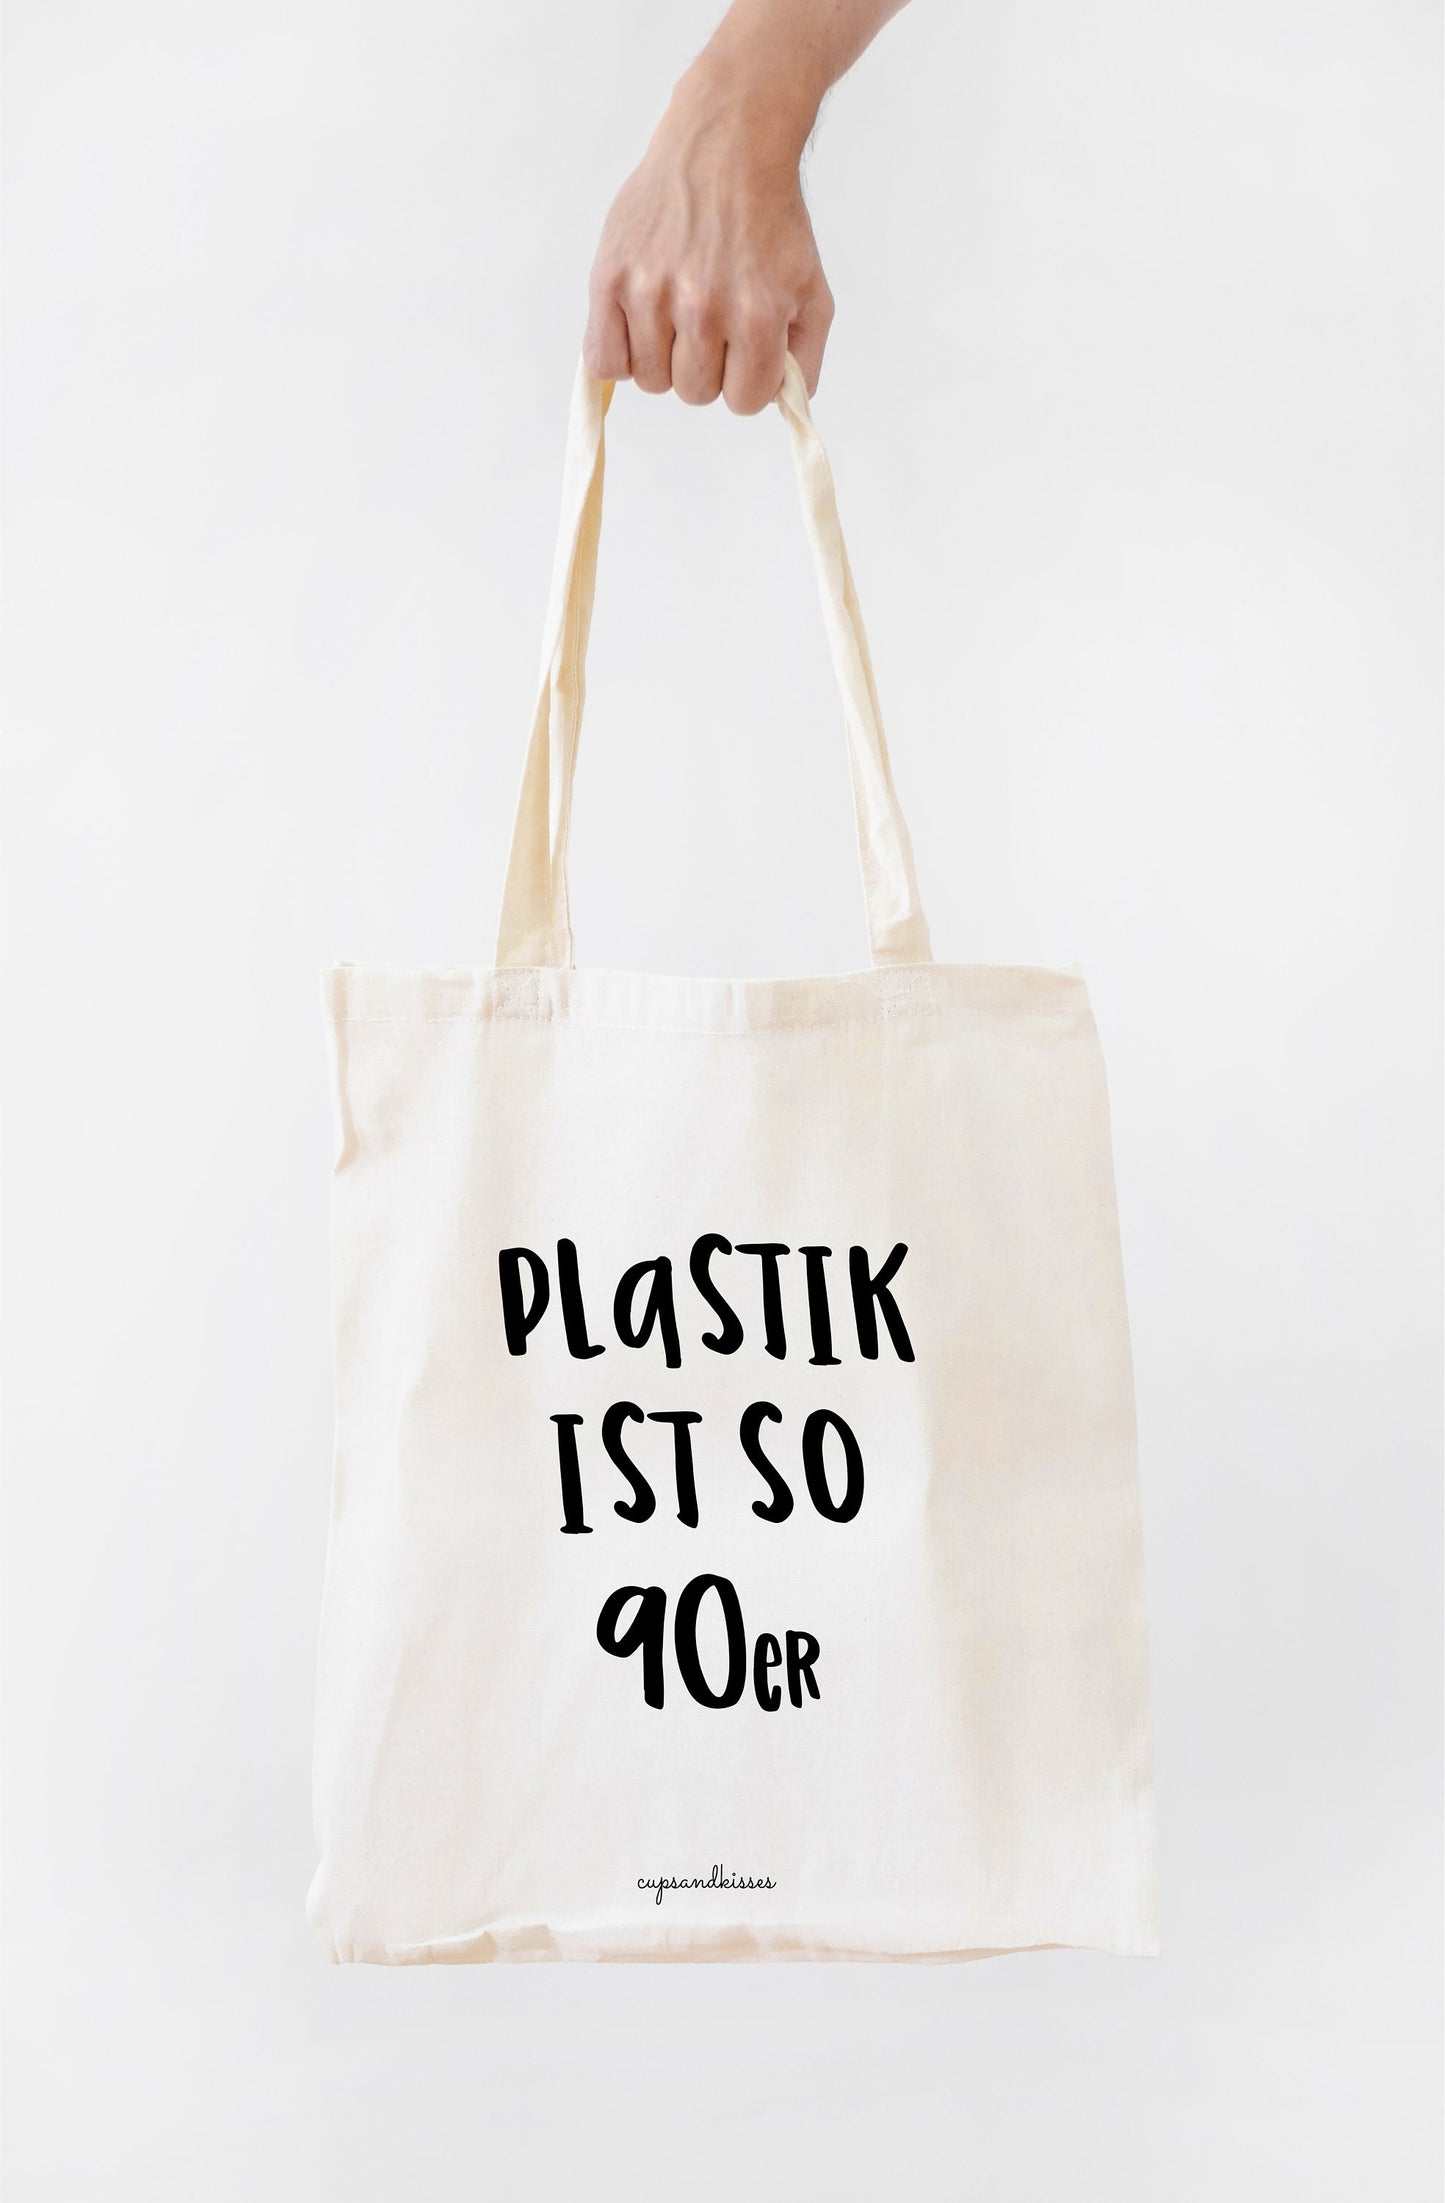 100% Bio-Baumwolltasche "Plastik ist so 90er" Fairtrade, OEKO-TEX - Cupsandkisses